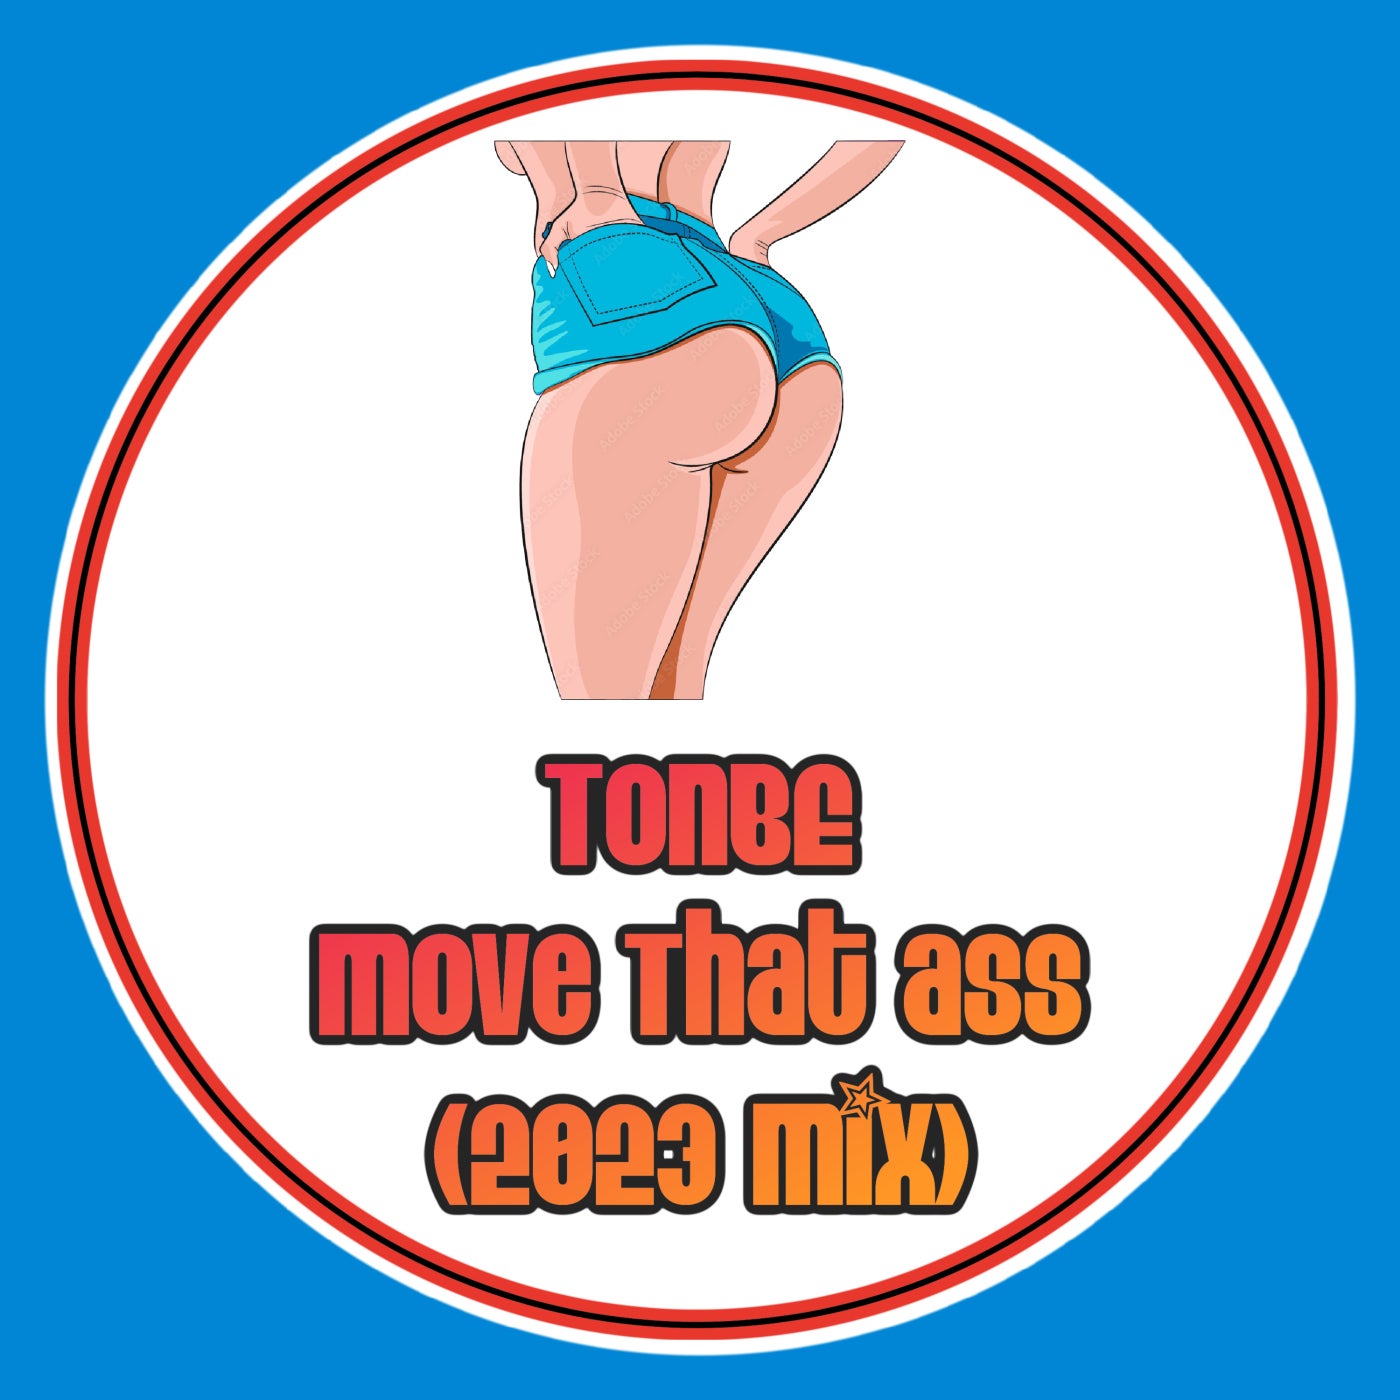 Move That Ass (2023 Mix)